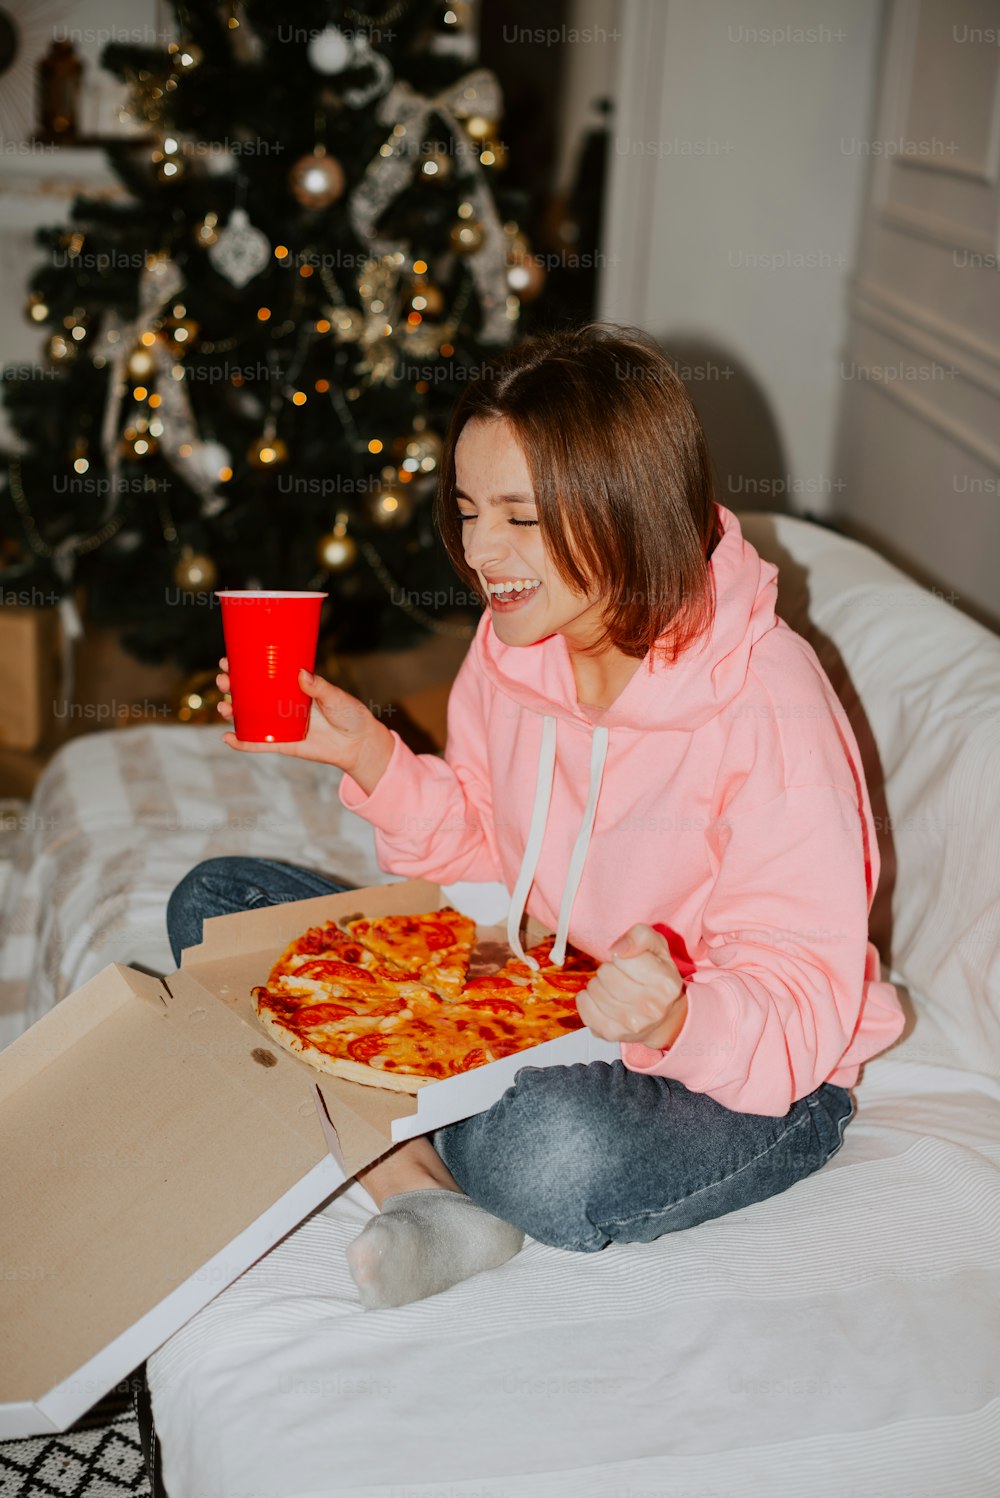 Una mujer sentada en una cama sosteniendo una taza roja y una pizza